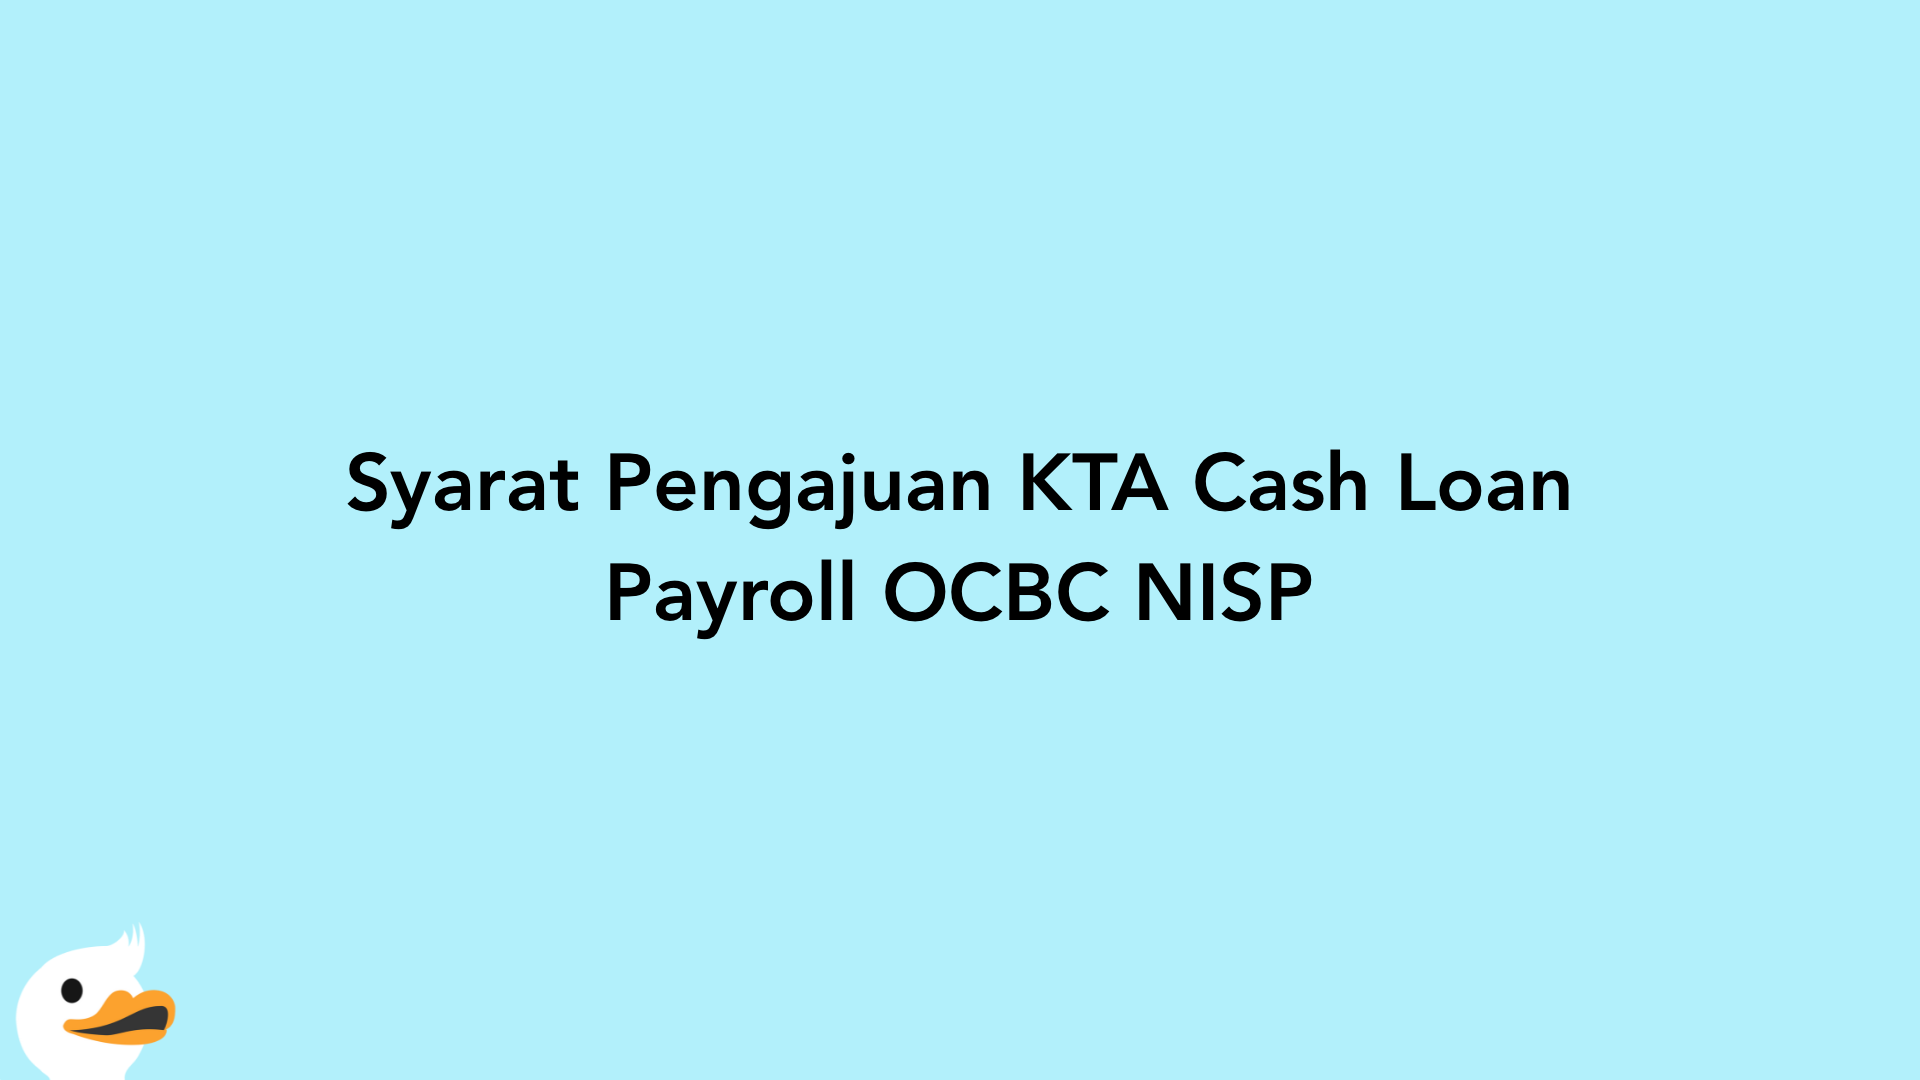 Syarat Pengajuan KTA Cash Loan Payroll OCBC NISP